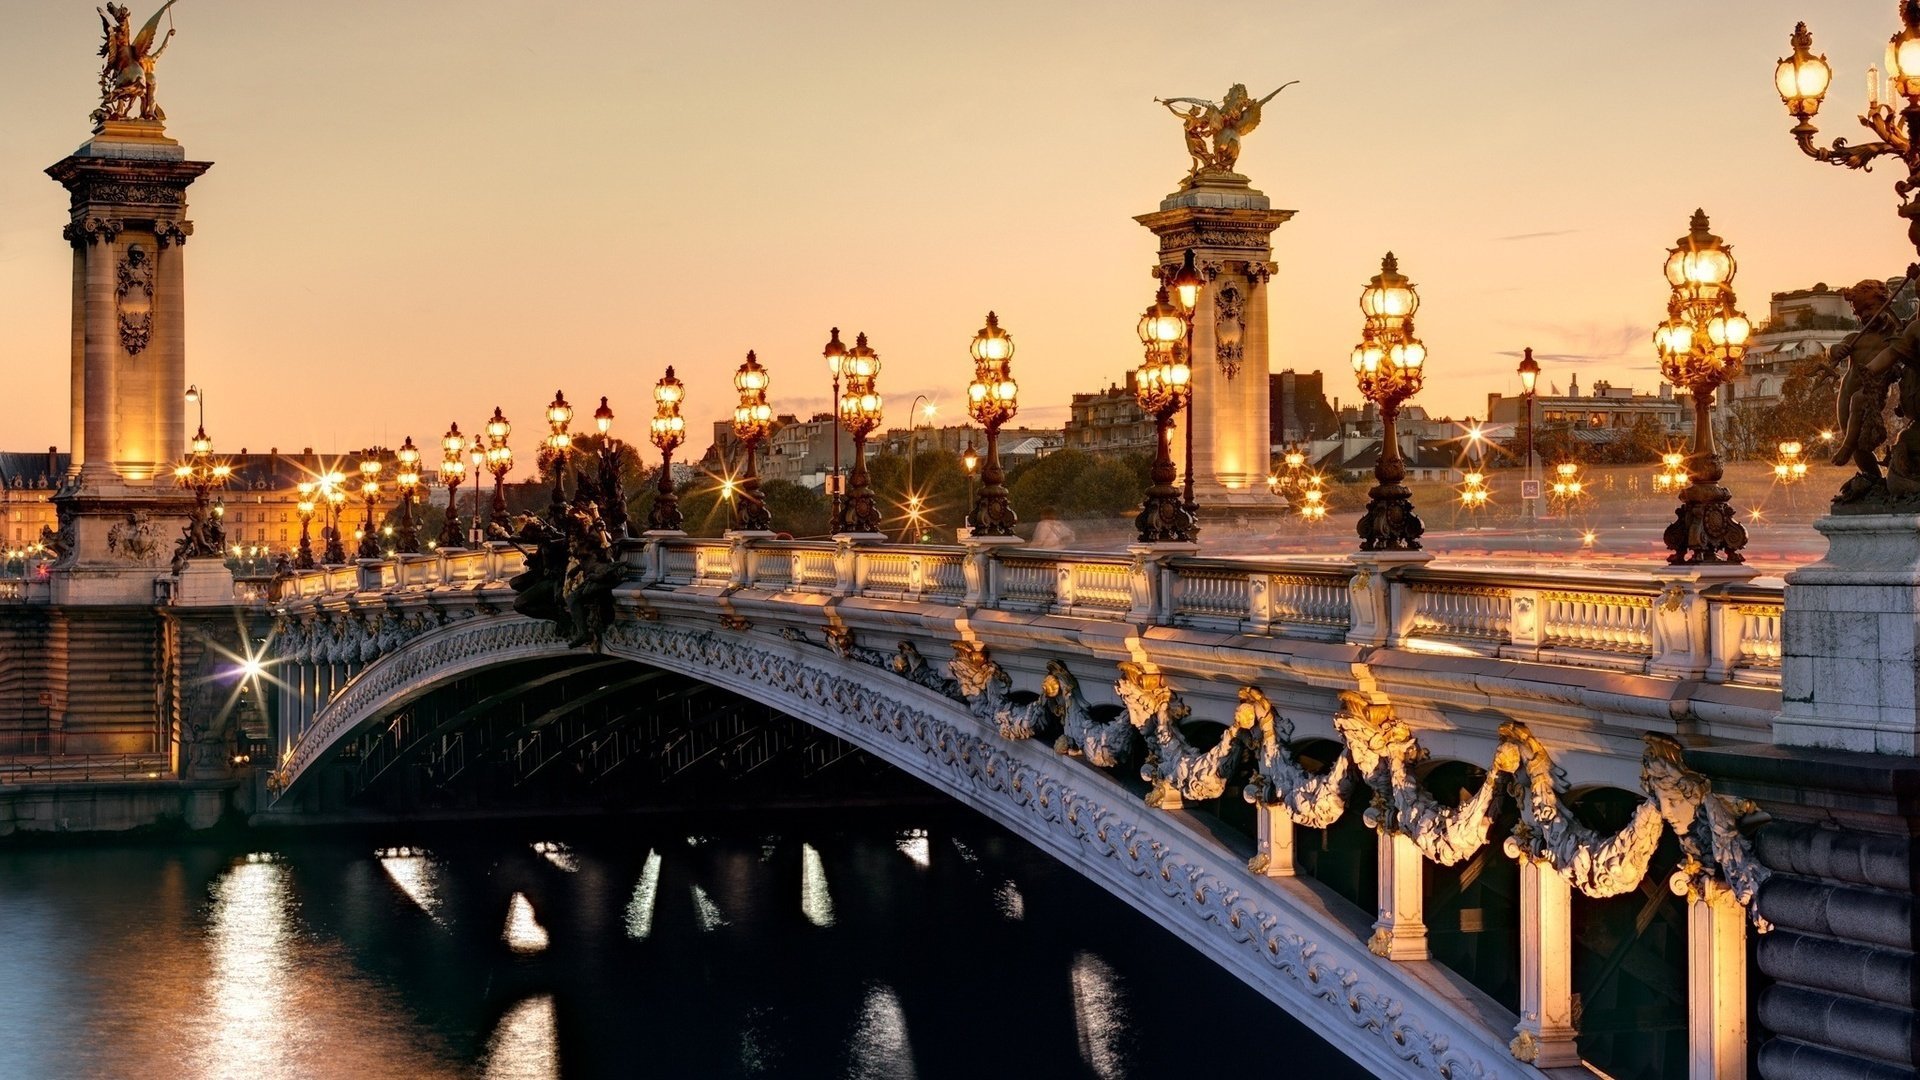 На фото показан мост во Франции